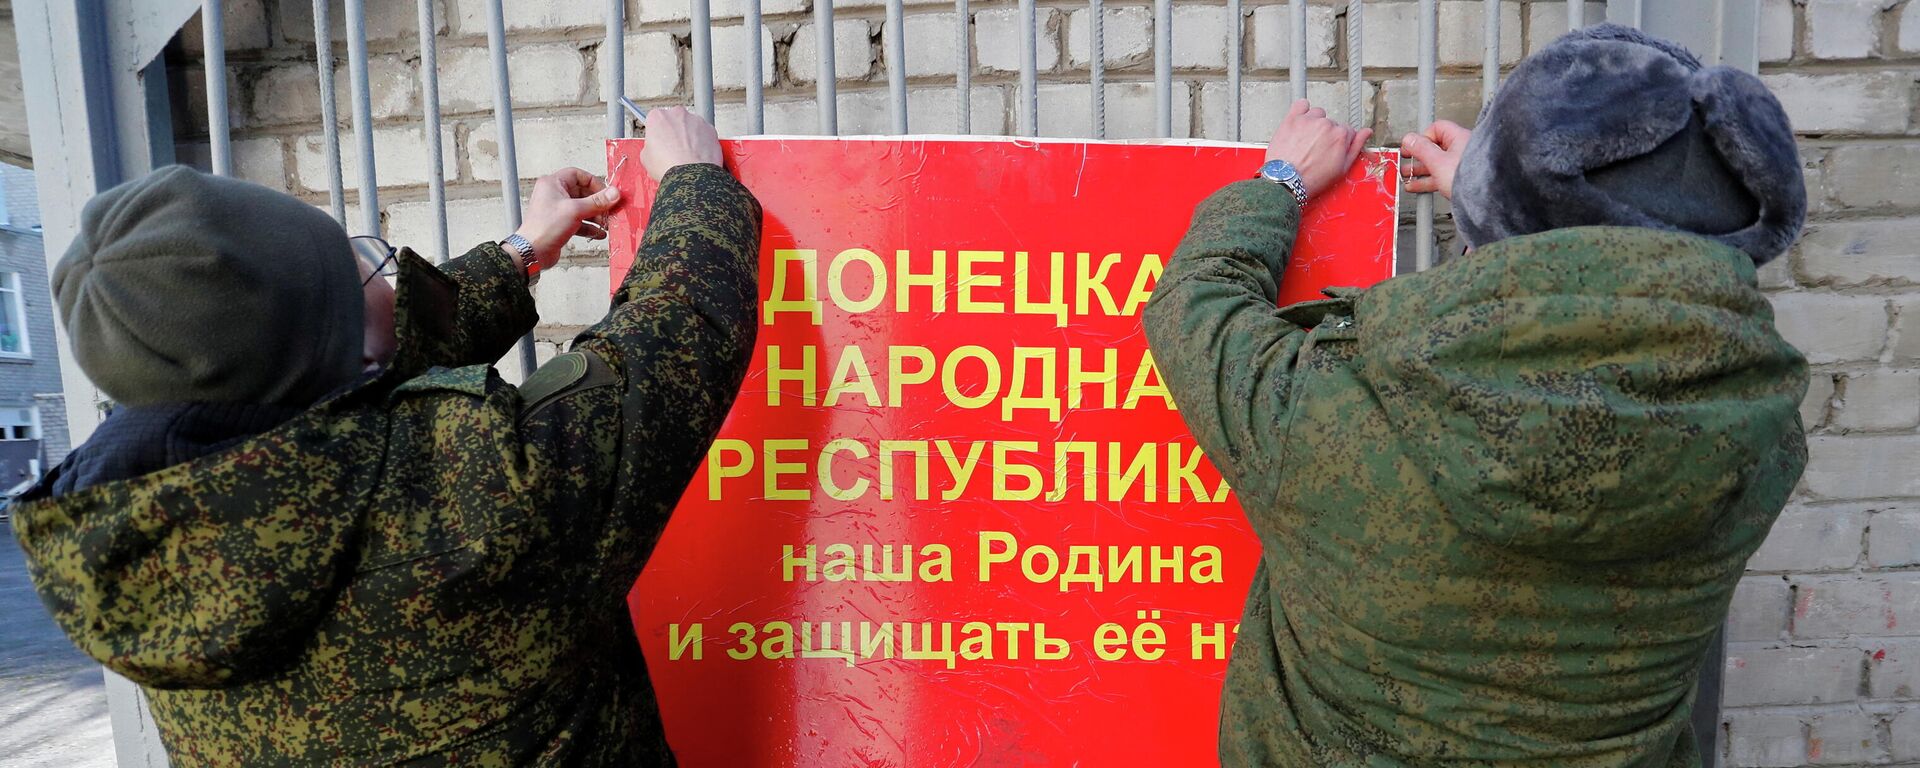 Militares da autoproclamada República Popular de Donetsk pendurando faixa nas portas de uma escola que diz: A República Popular de Donetsk é nossa pátria e nós devemos defendê-la!, Donetsk, 19 de fevereiro de 2022 - Sputnik Brasil, 1920, 20.02.2022